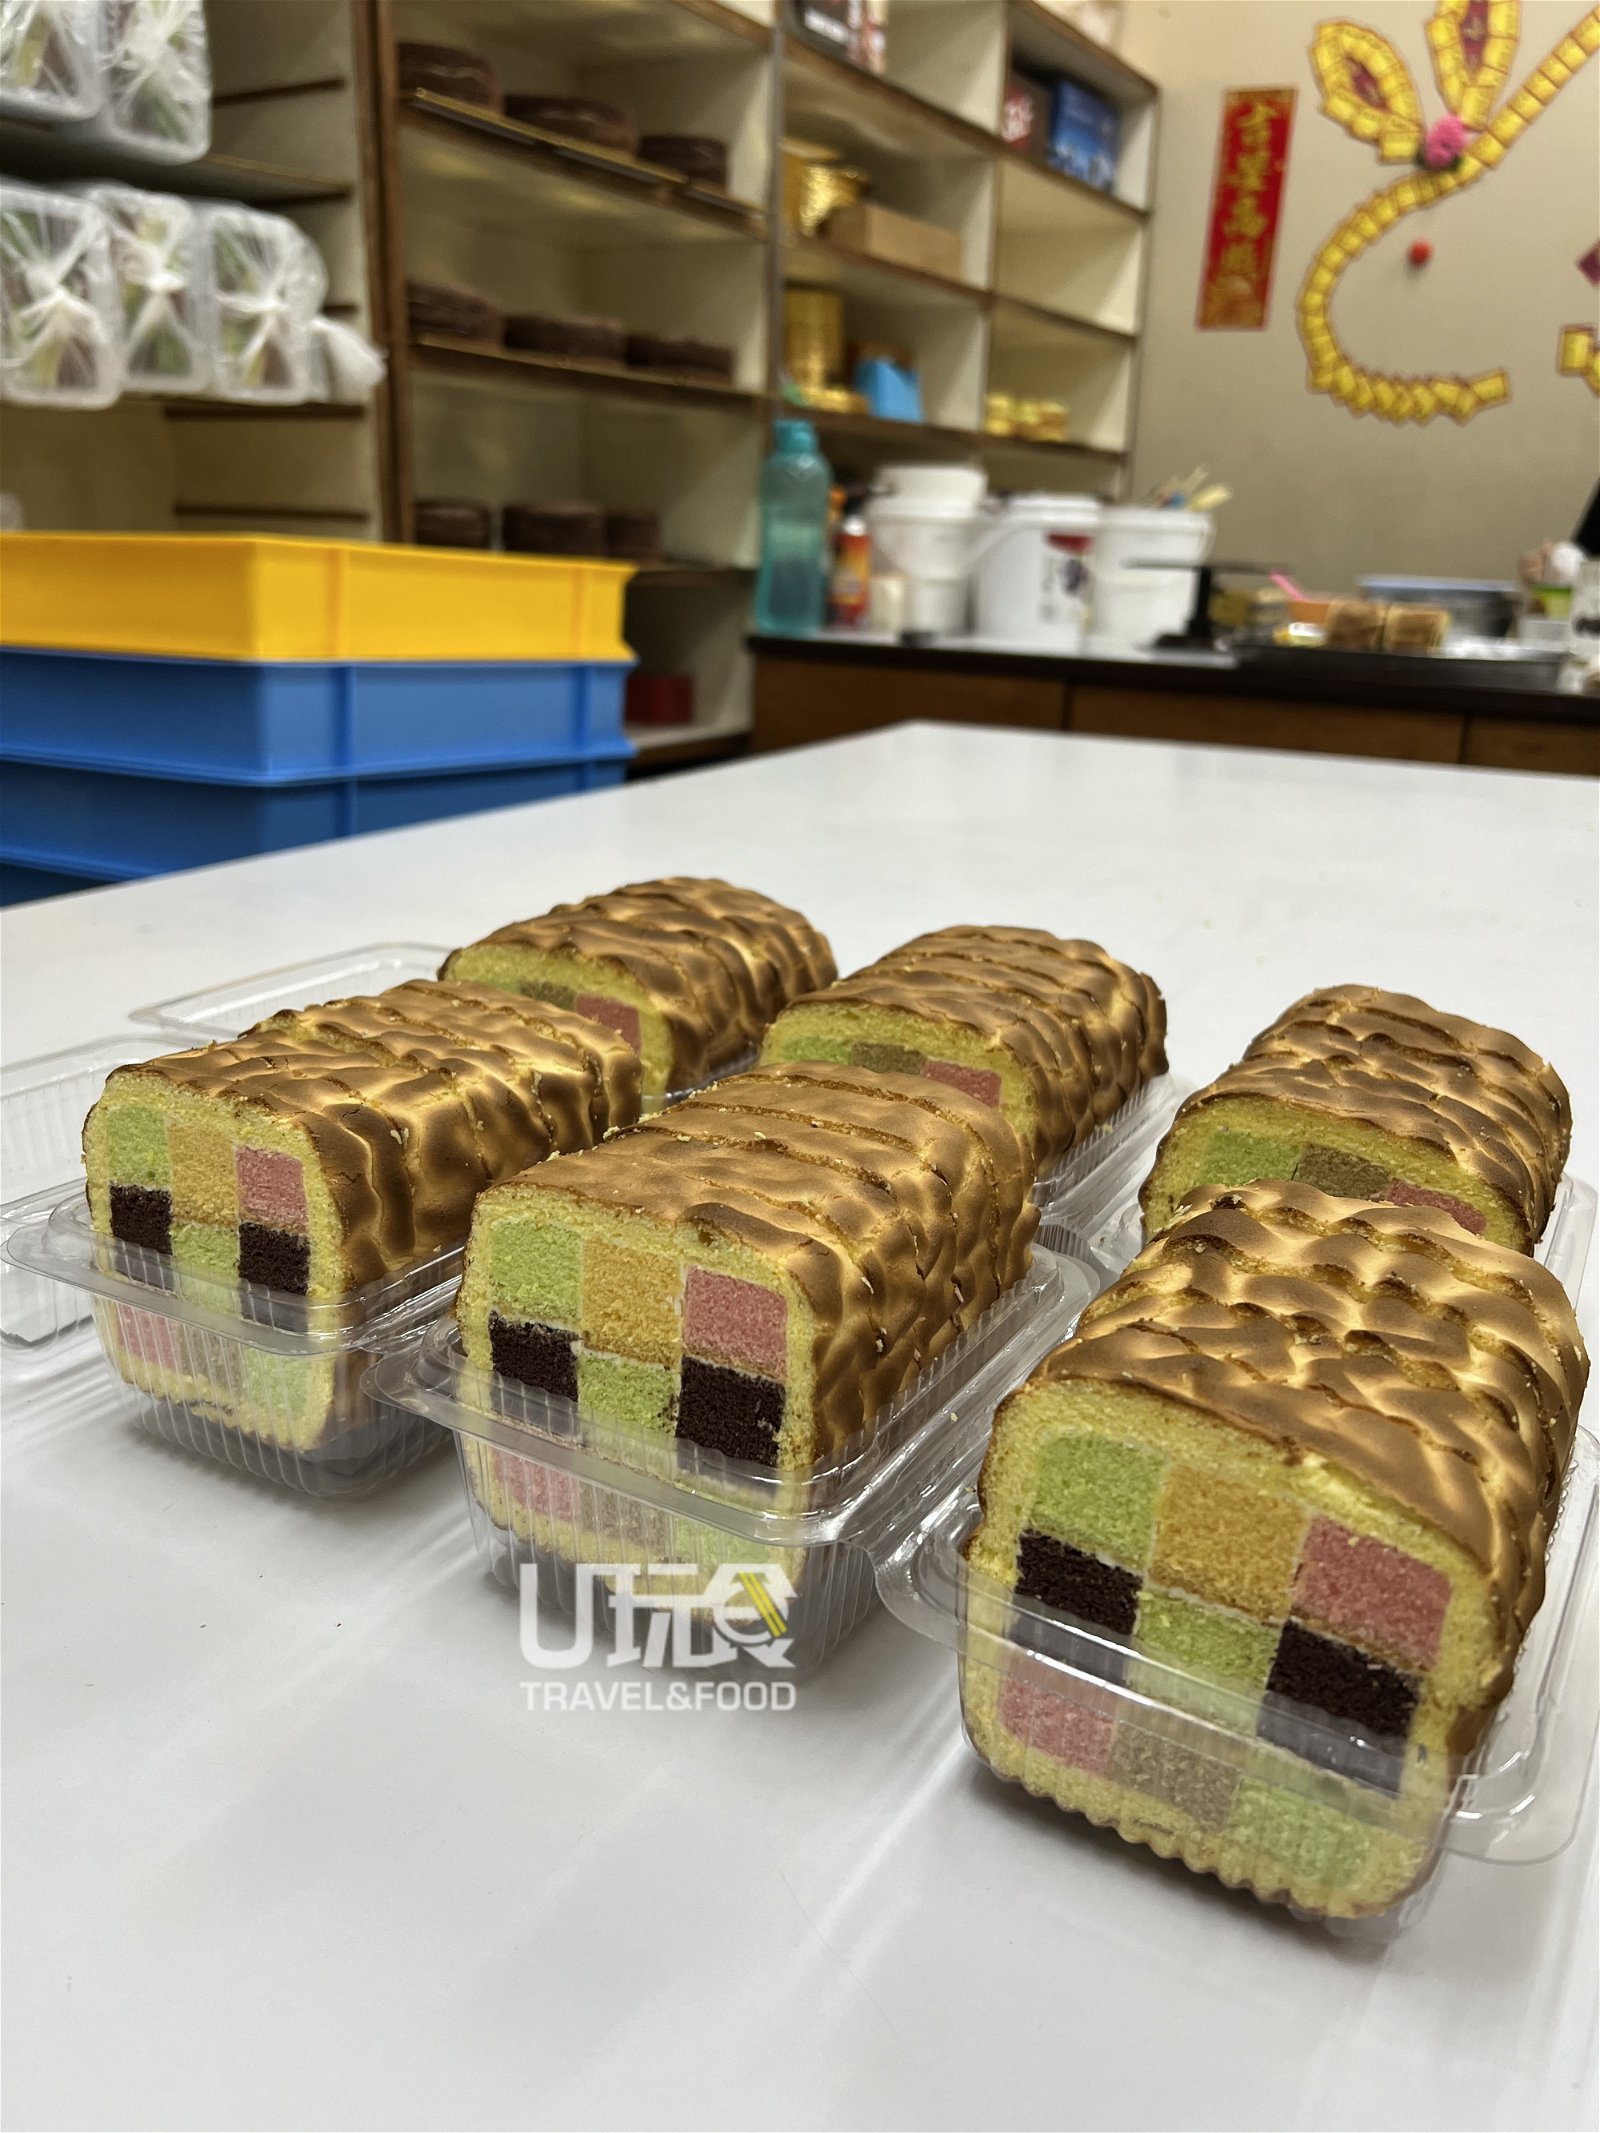 镇店之宝怡保首创彩虹格子虎皮蛋糕。